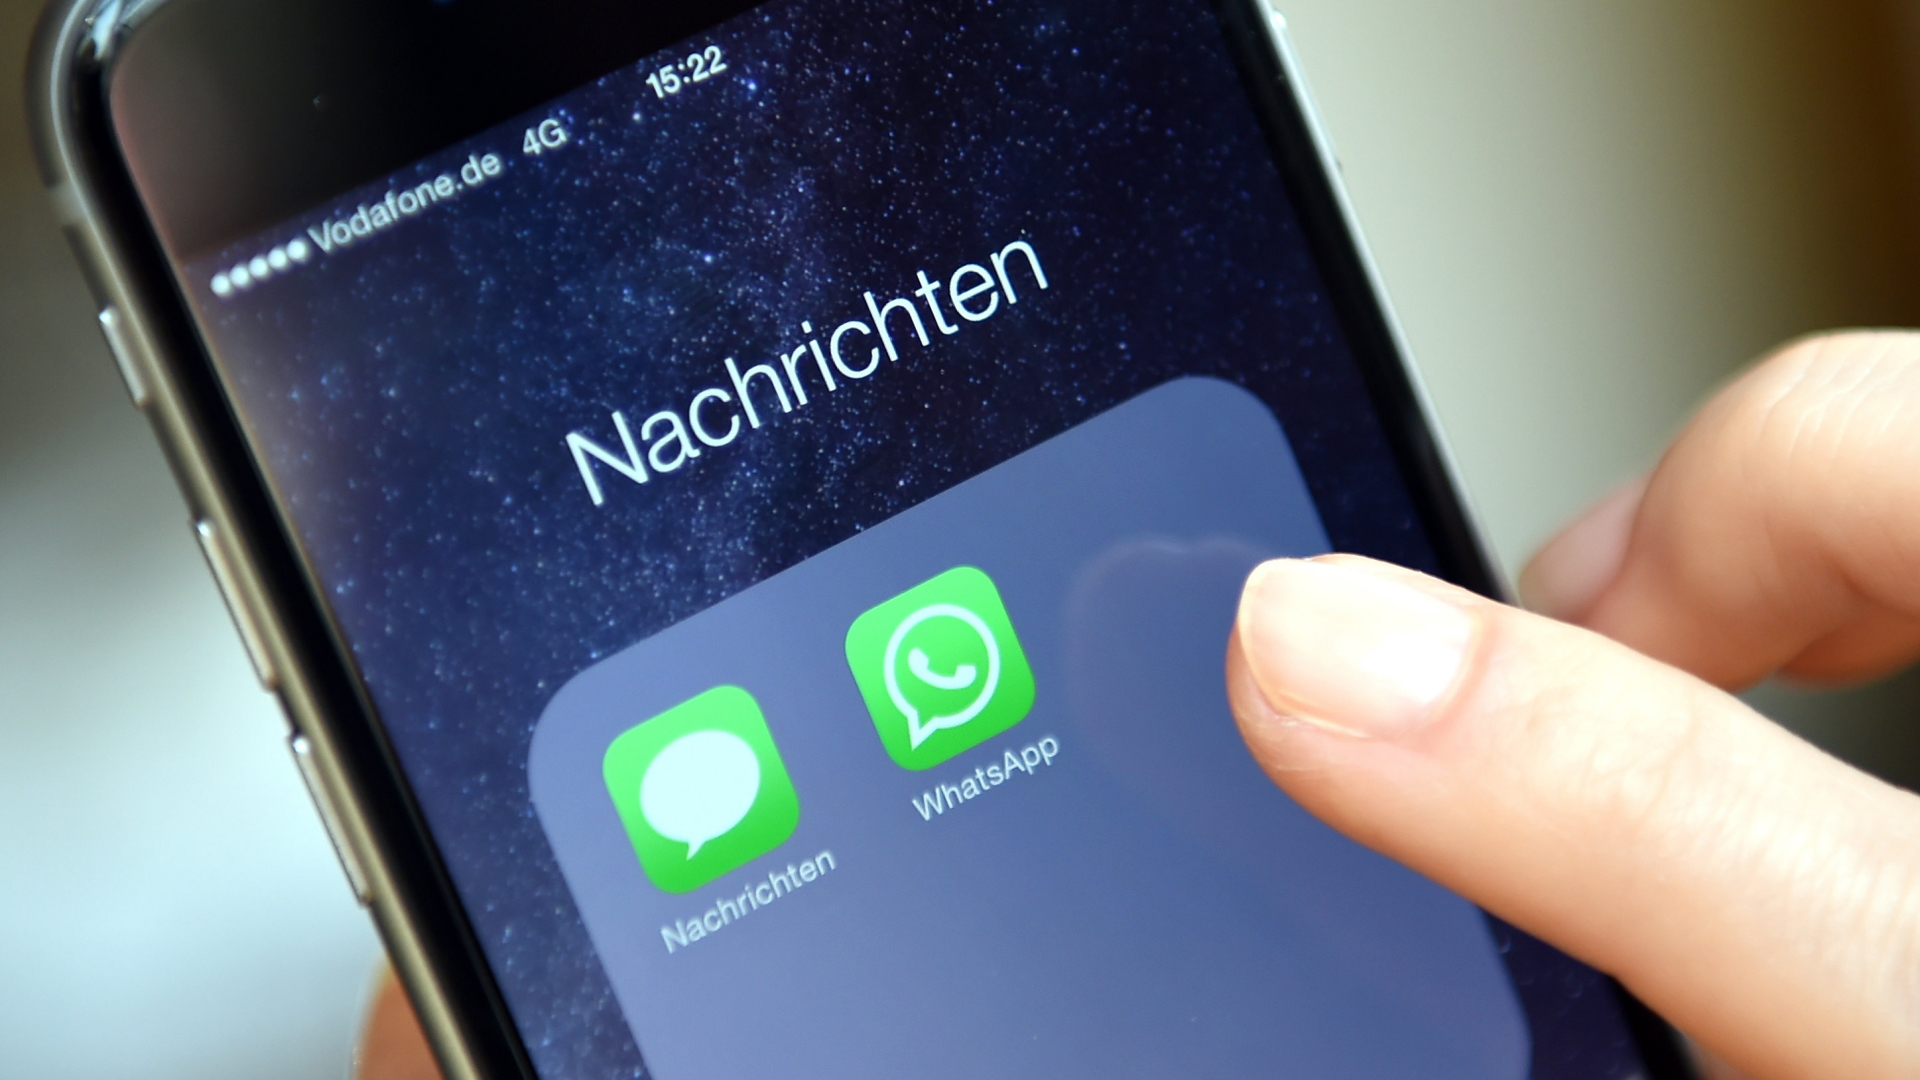 Auf dem Display eines Smartphones werden die Symbole der Apps "WhatsApp" und "Nachrichten" angezeigt